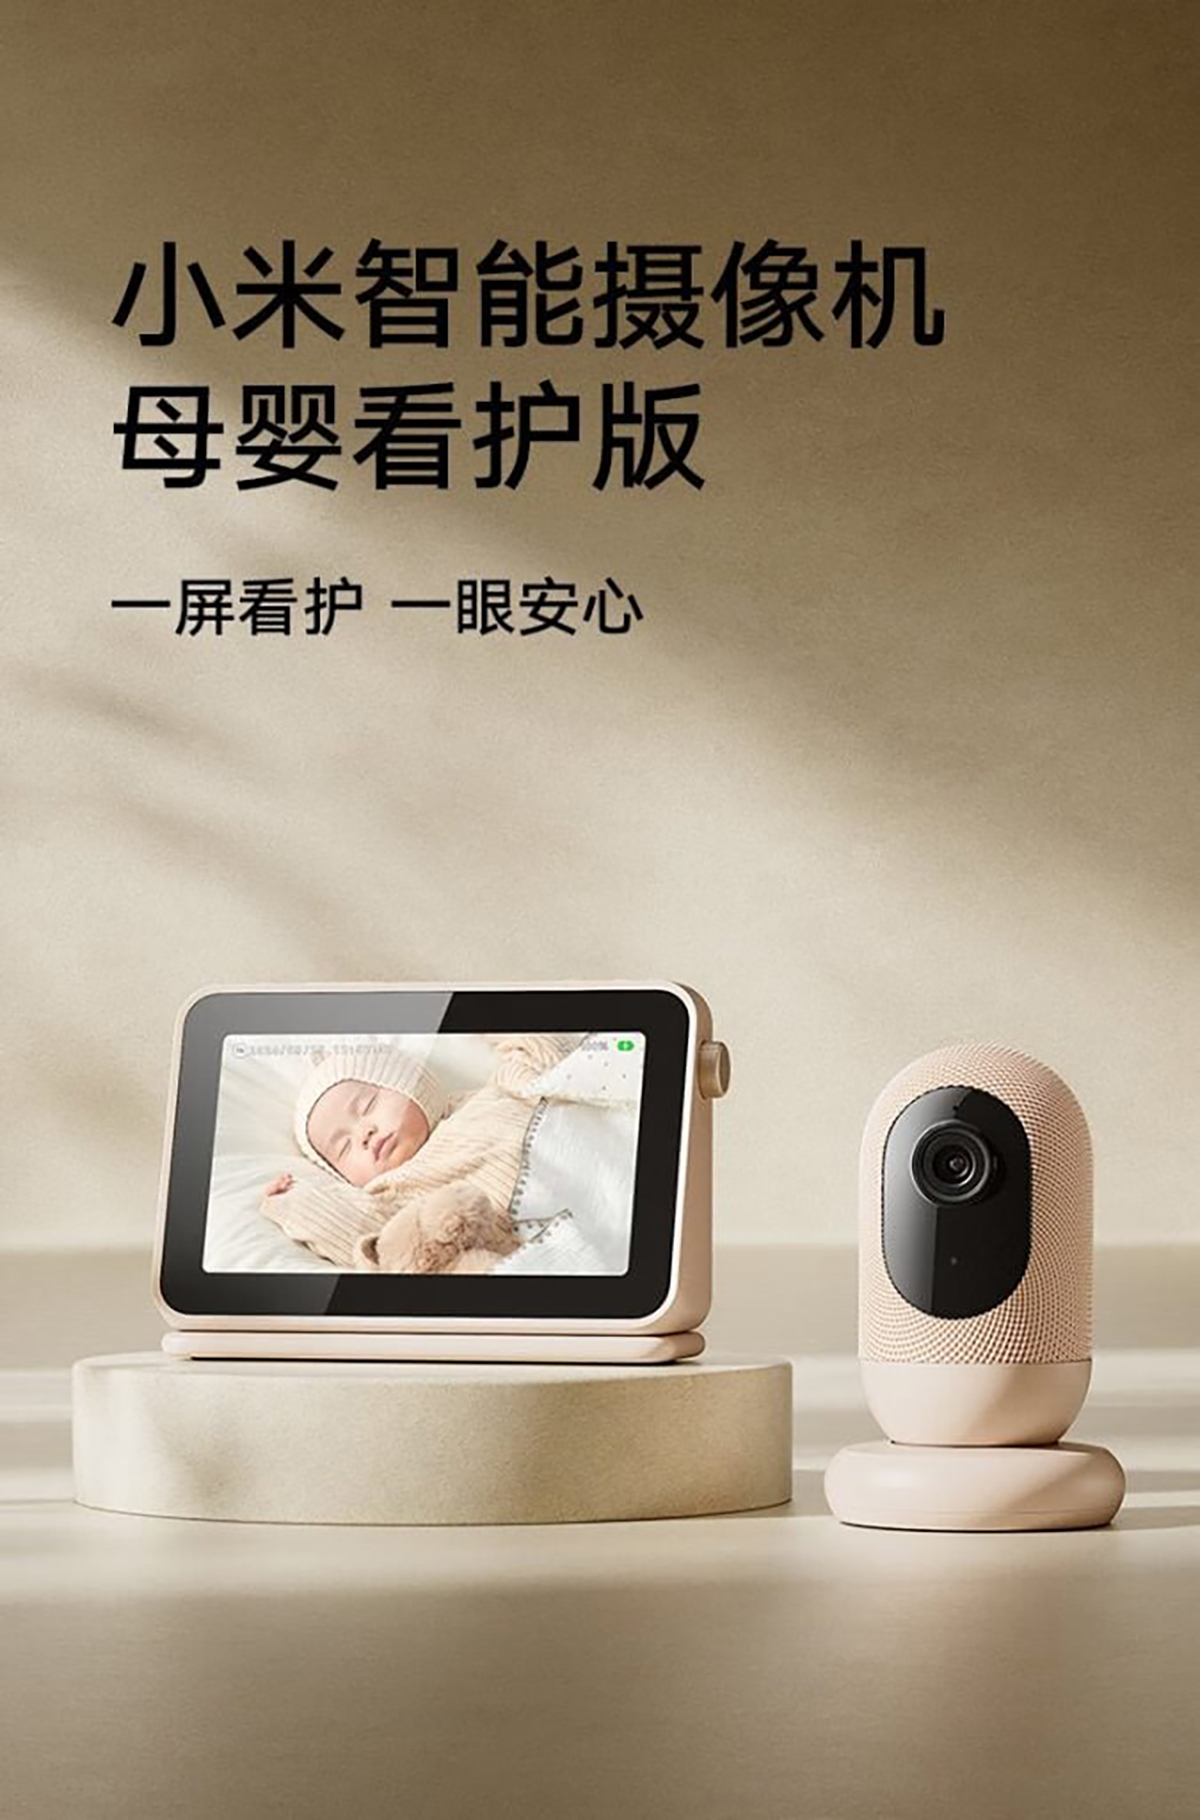 Xiaomi ra mắt camera thông minh mới